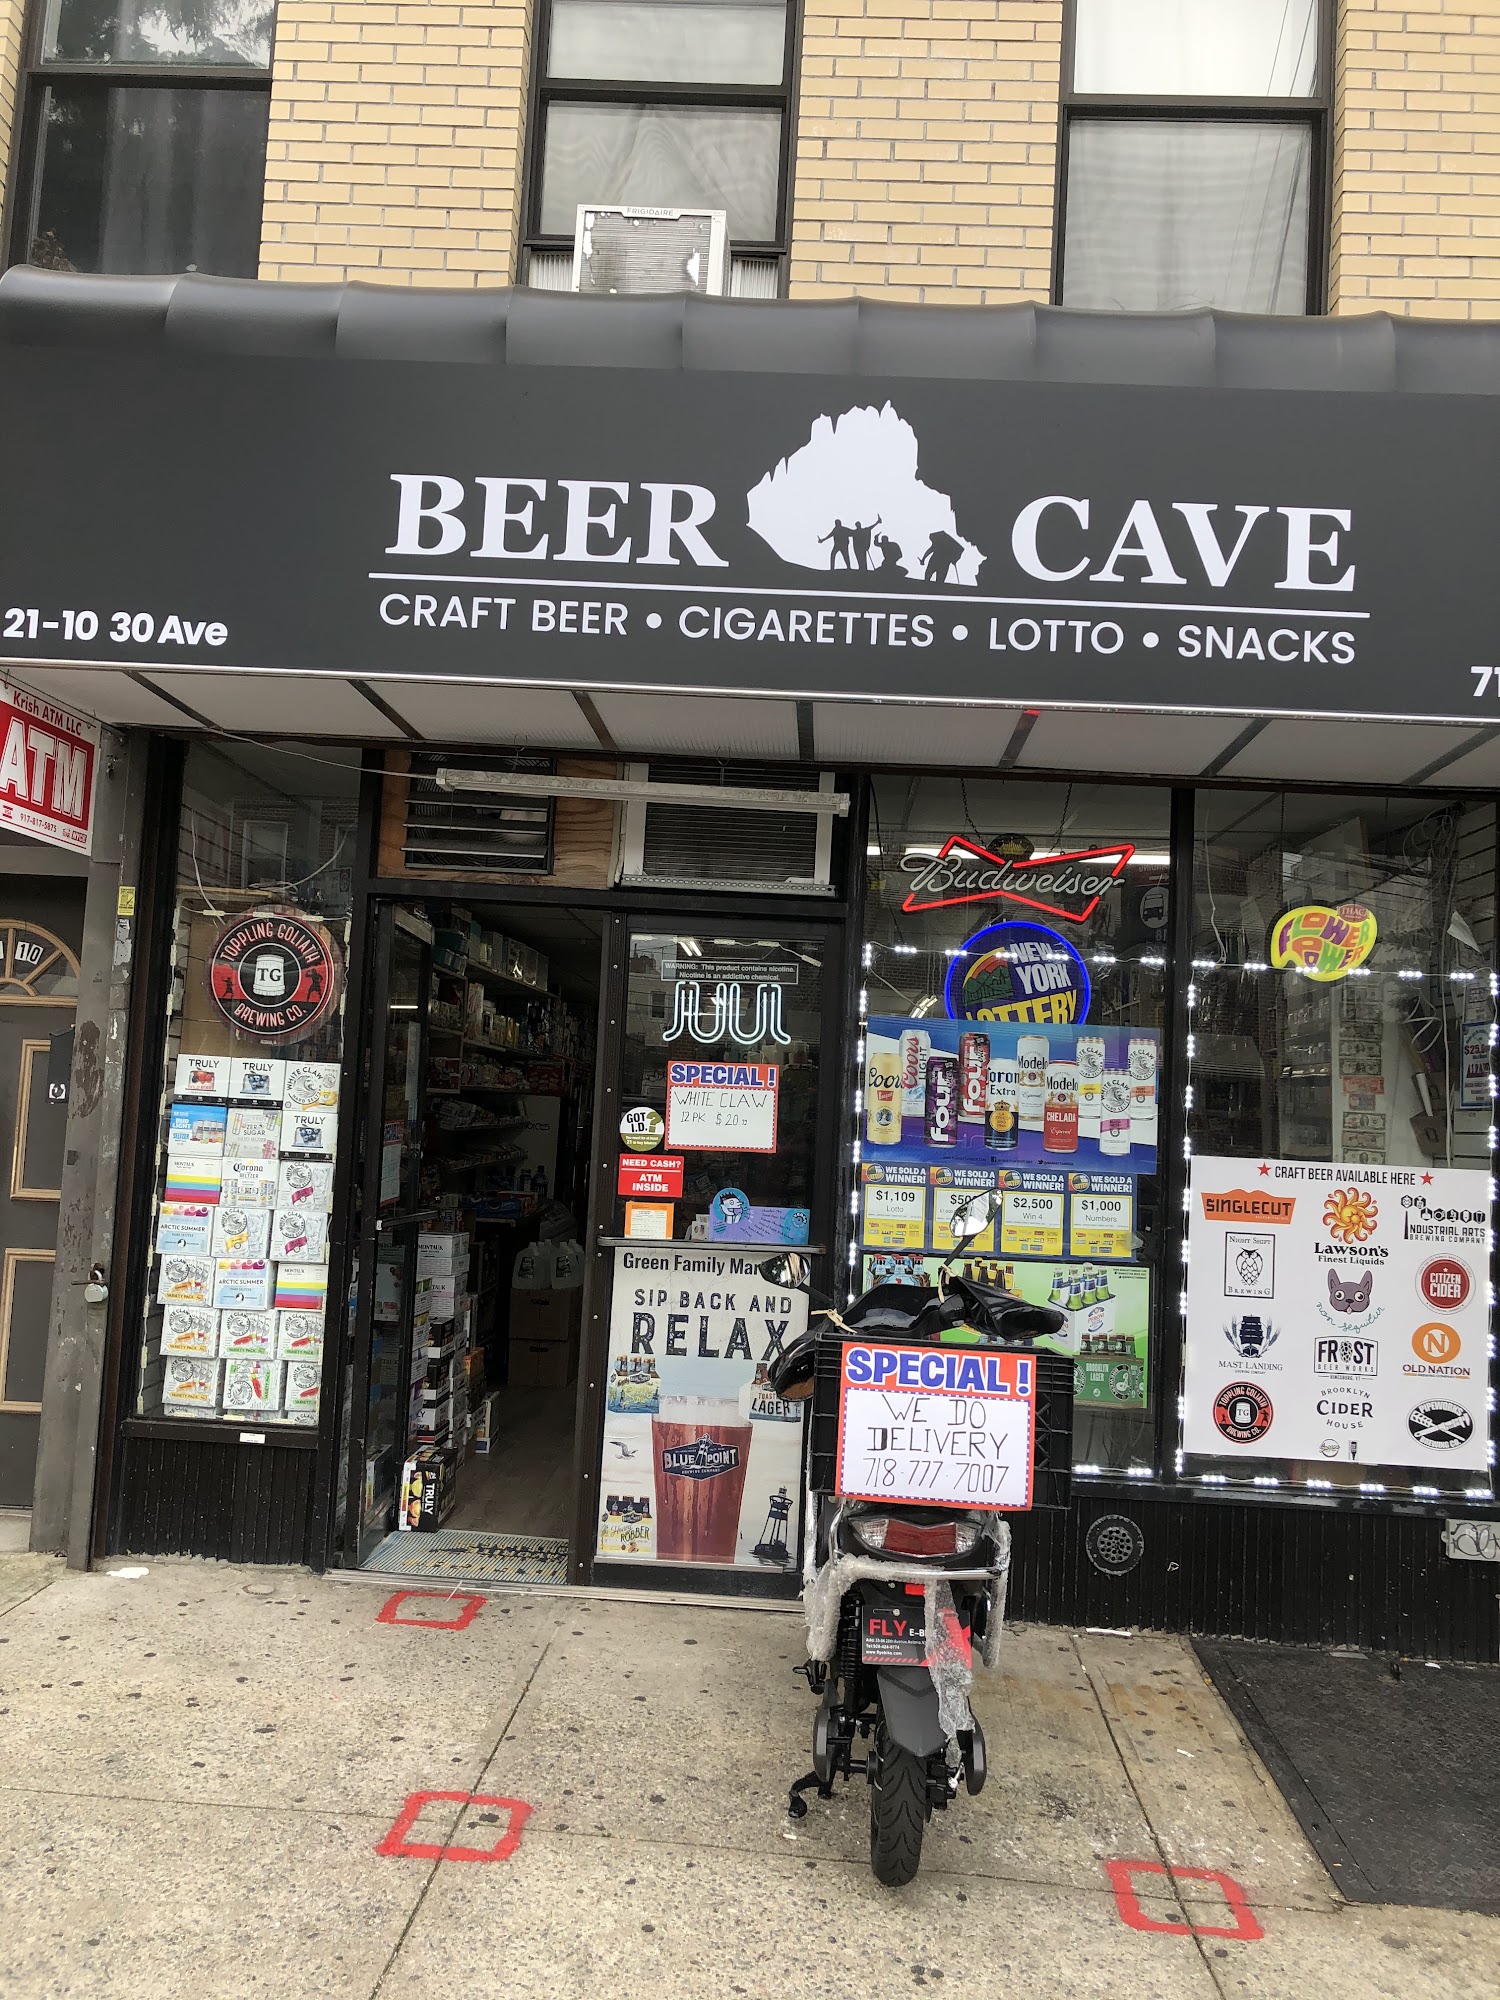 Beer cave